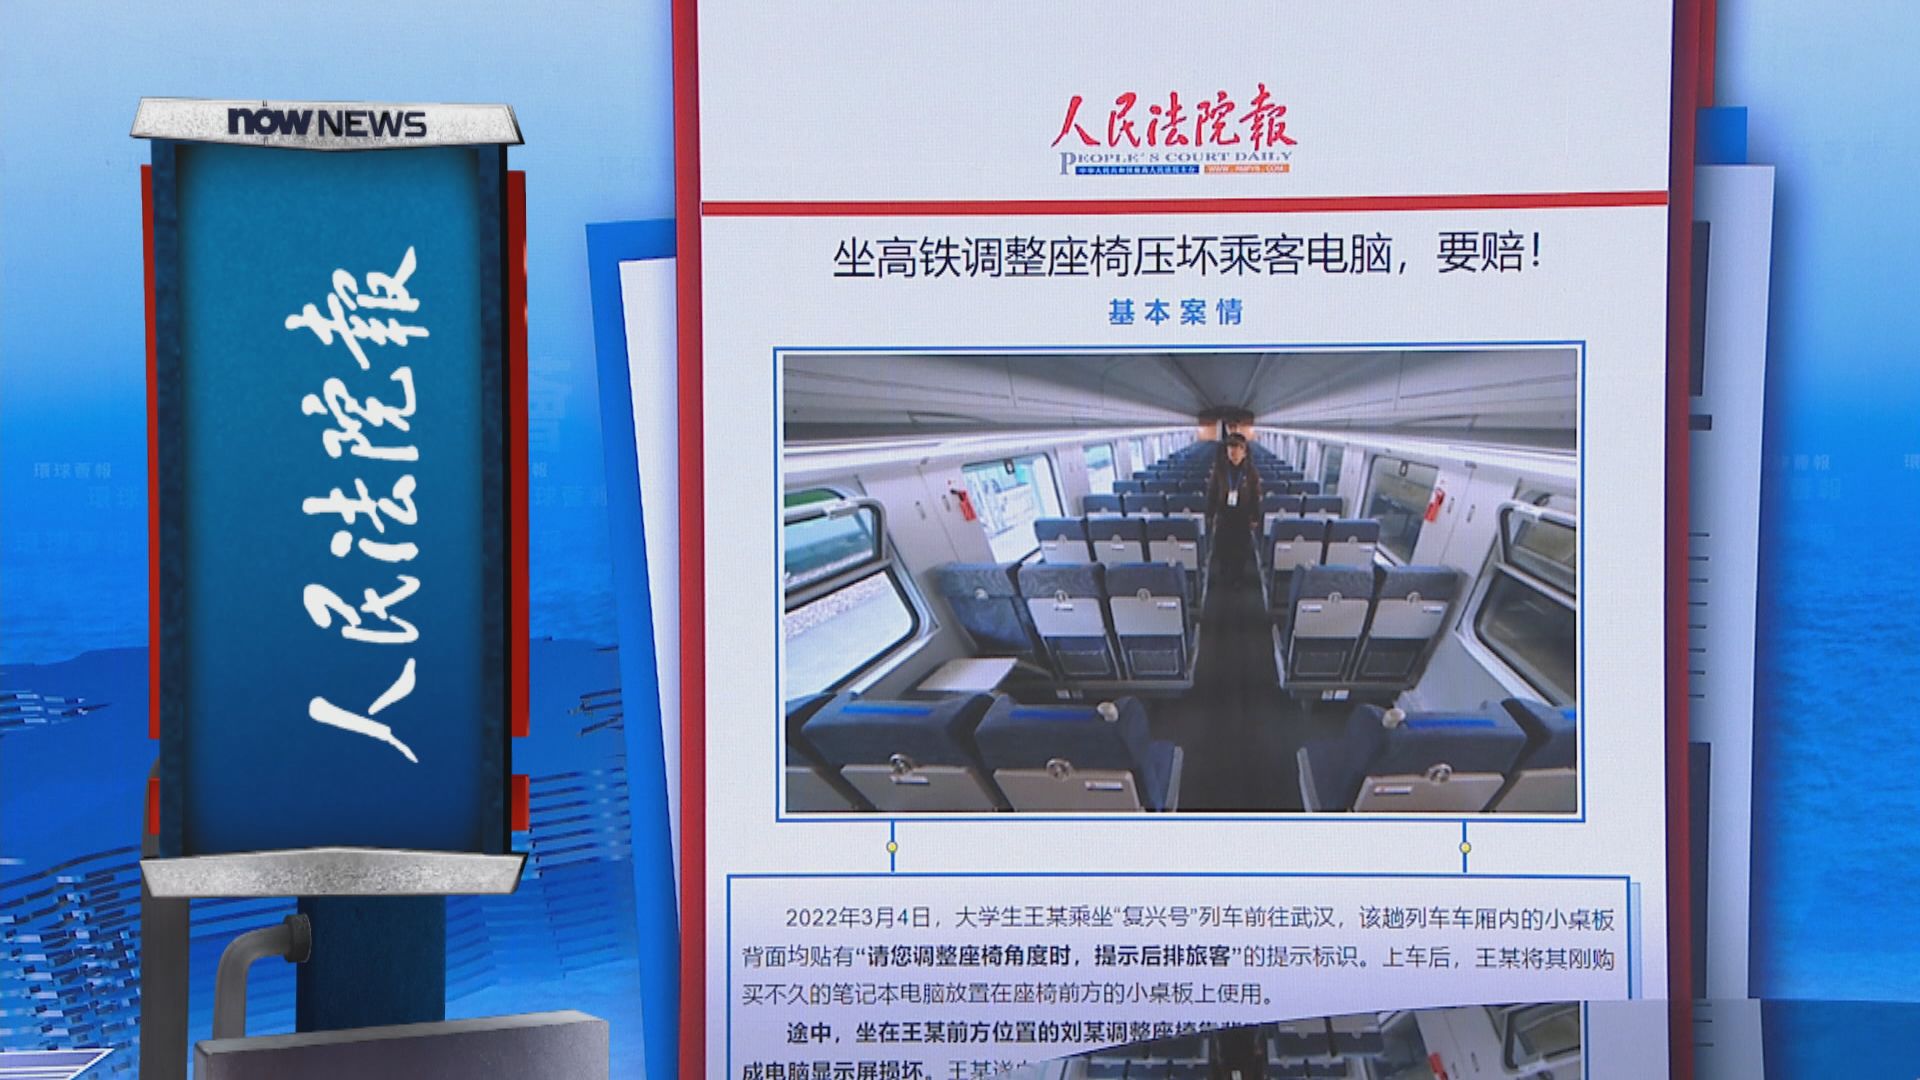 【環球薈報】湖南乘客坐高鐵後仰弄壞他人電腦須賠償